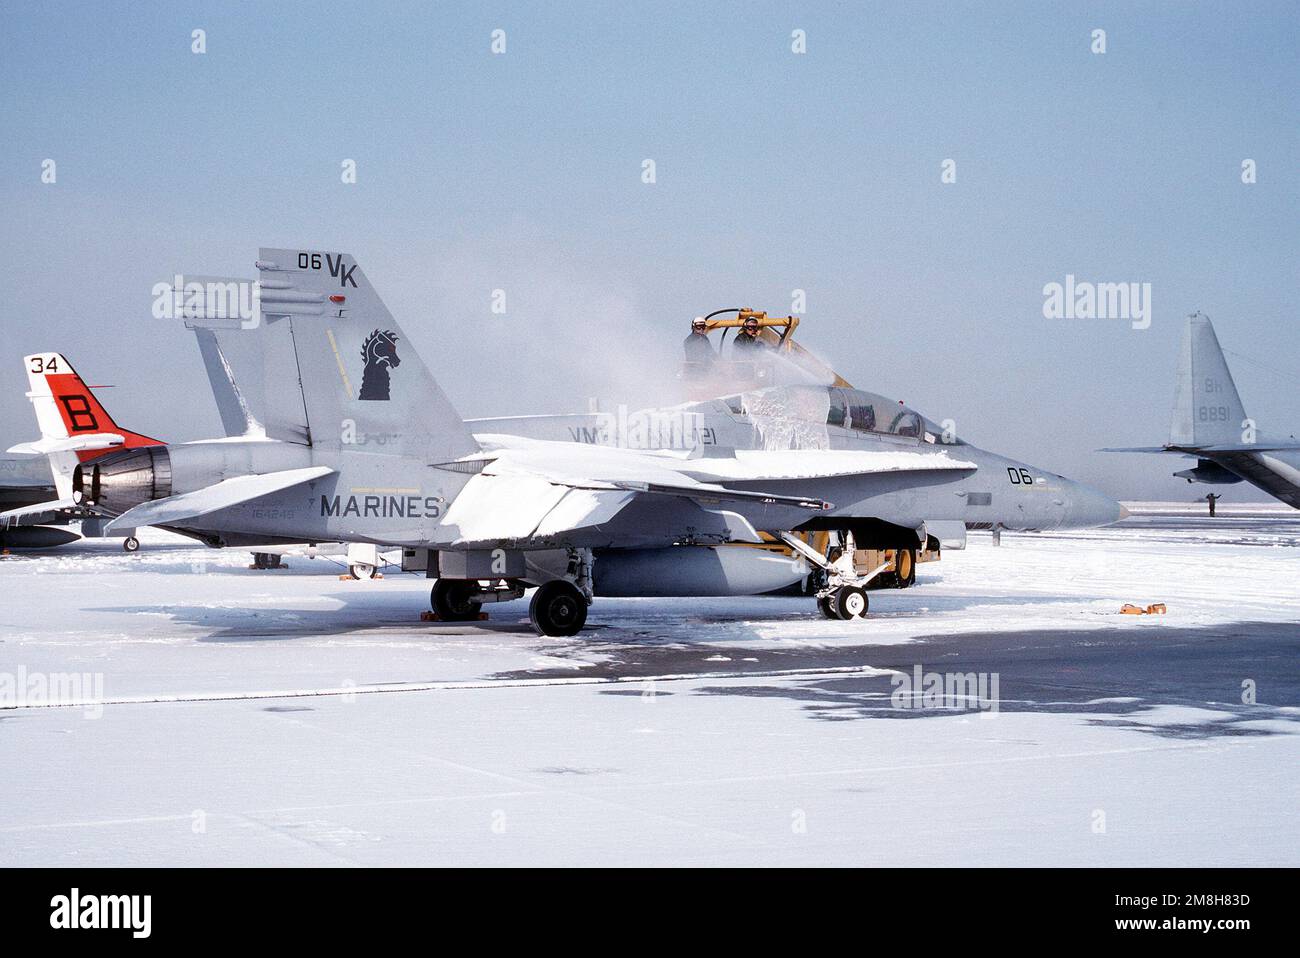 Un aéronef de combat maritime 121 (VMFA(AW)-121) F/A-18D Hornet est dégelé sur la ligne de vol avant un contrôle en amont. Base: Naval Air Facility, Andrews AFB État: Maryland (MD) pays: Etats-Unis d'Amérique (USA) Banque D'Images